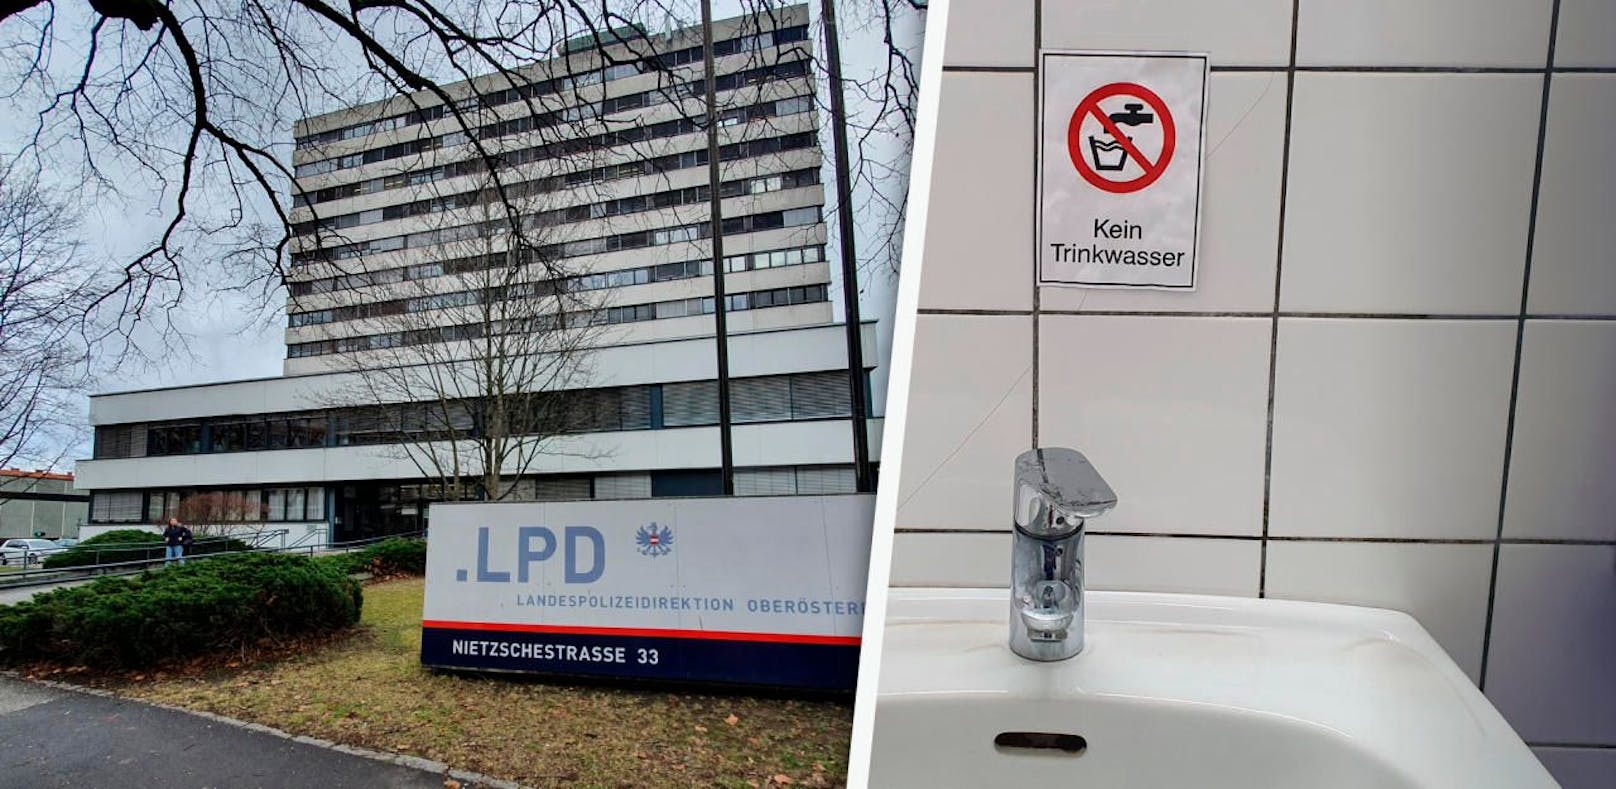 Bei der Landespolizeidirektion in der Nietzschestraße herrschte eine Woche Trink- und Duschverbot.